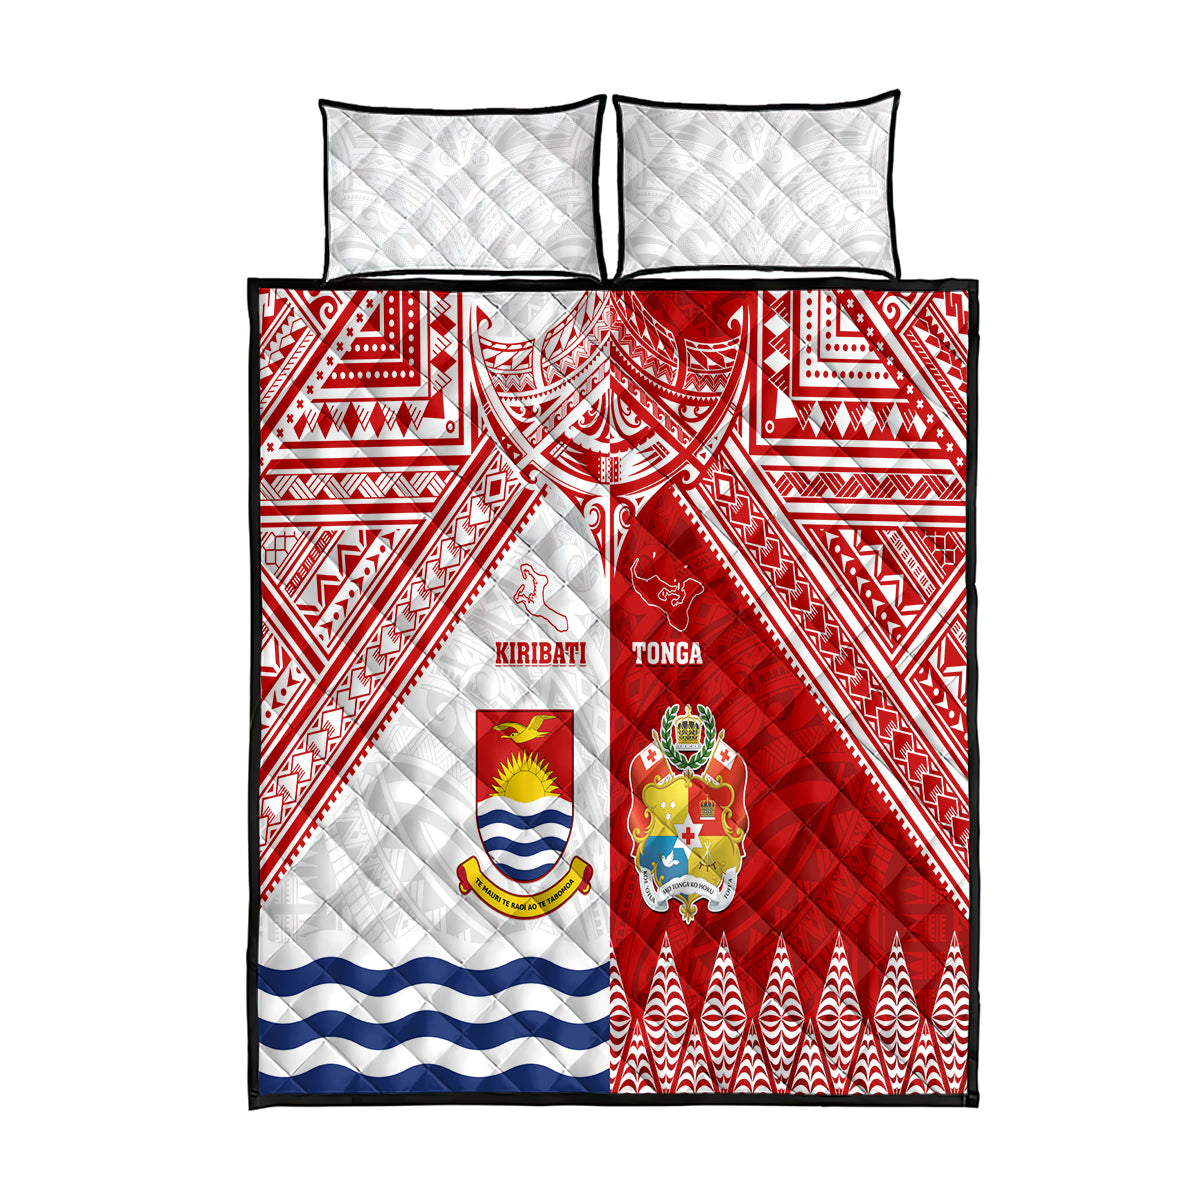 Tonga And Kiribati Quilt Bed Set Coat Of Arms Polynesian Pattern LT05 Red - Polynesian Pride